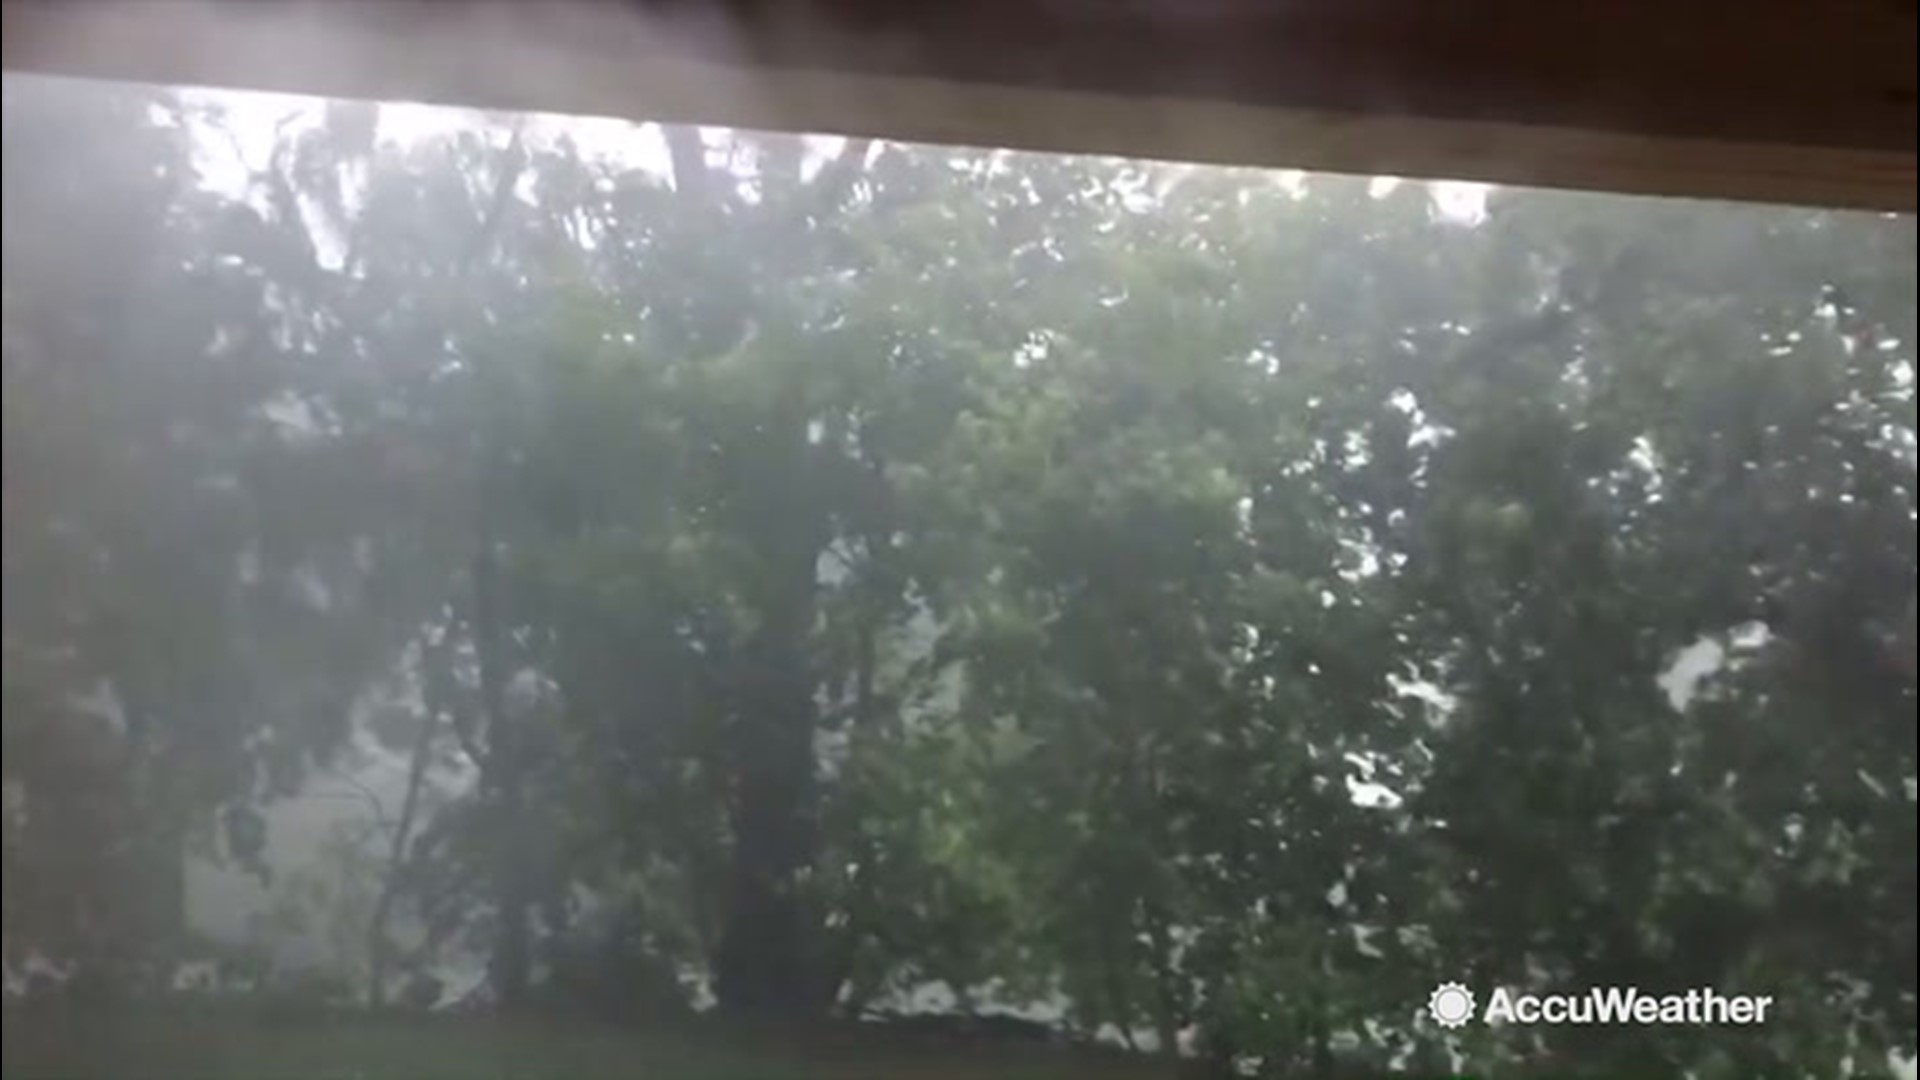 In Reedsville, Pennsylvania, intense rain plagued the area on Aug. 18.